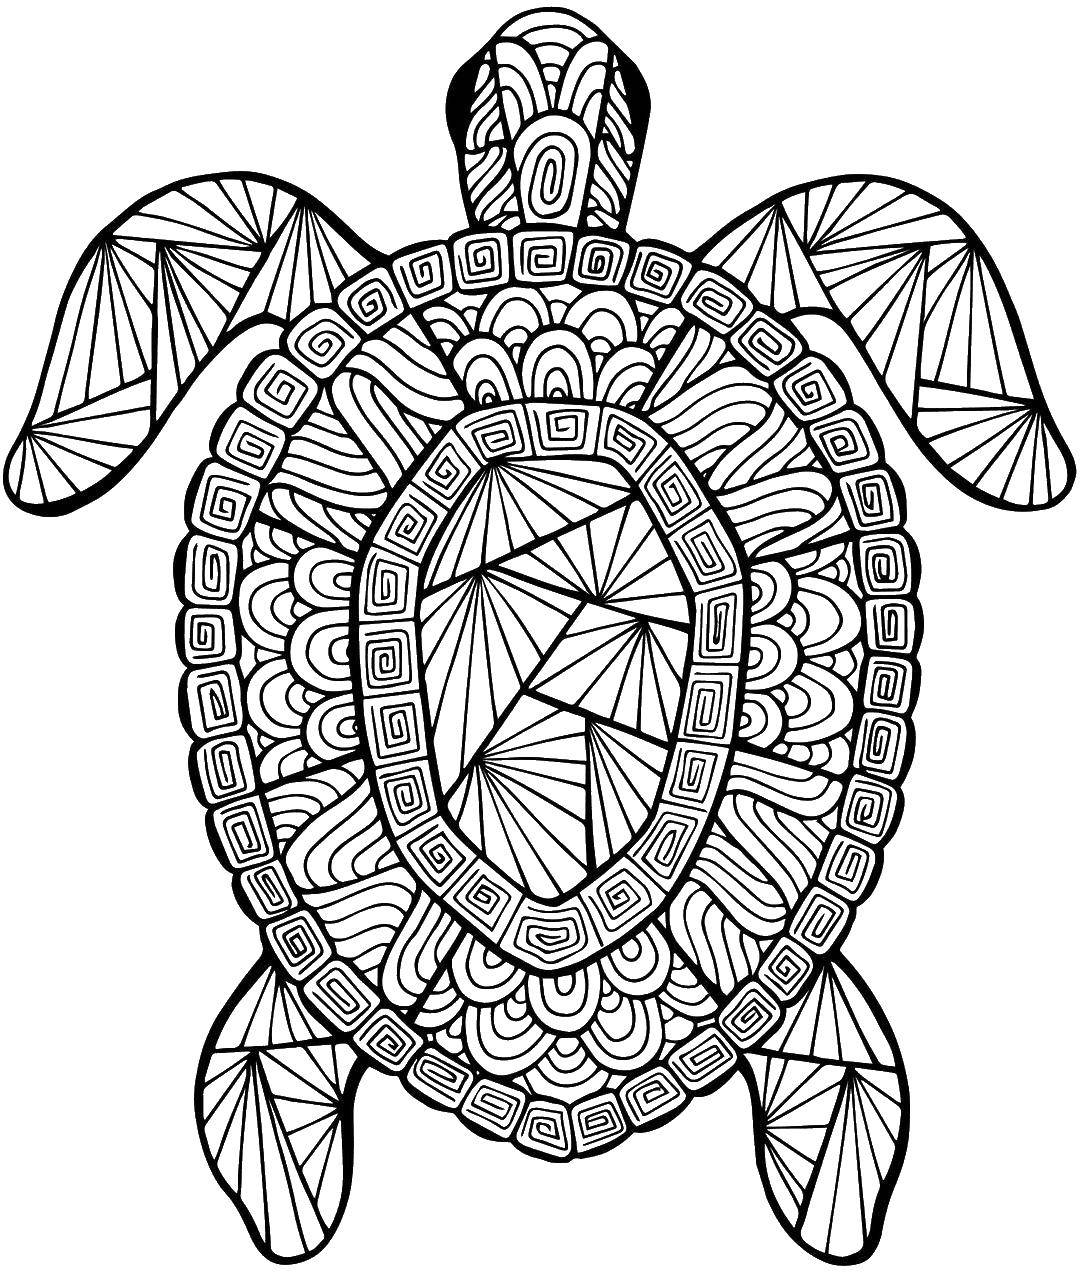 Раскраски с черепахами, узорами и другими антистрессовыми изображениями - бесплатно на нашем сайте (черепаха)